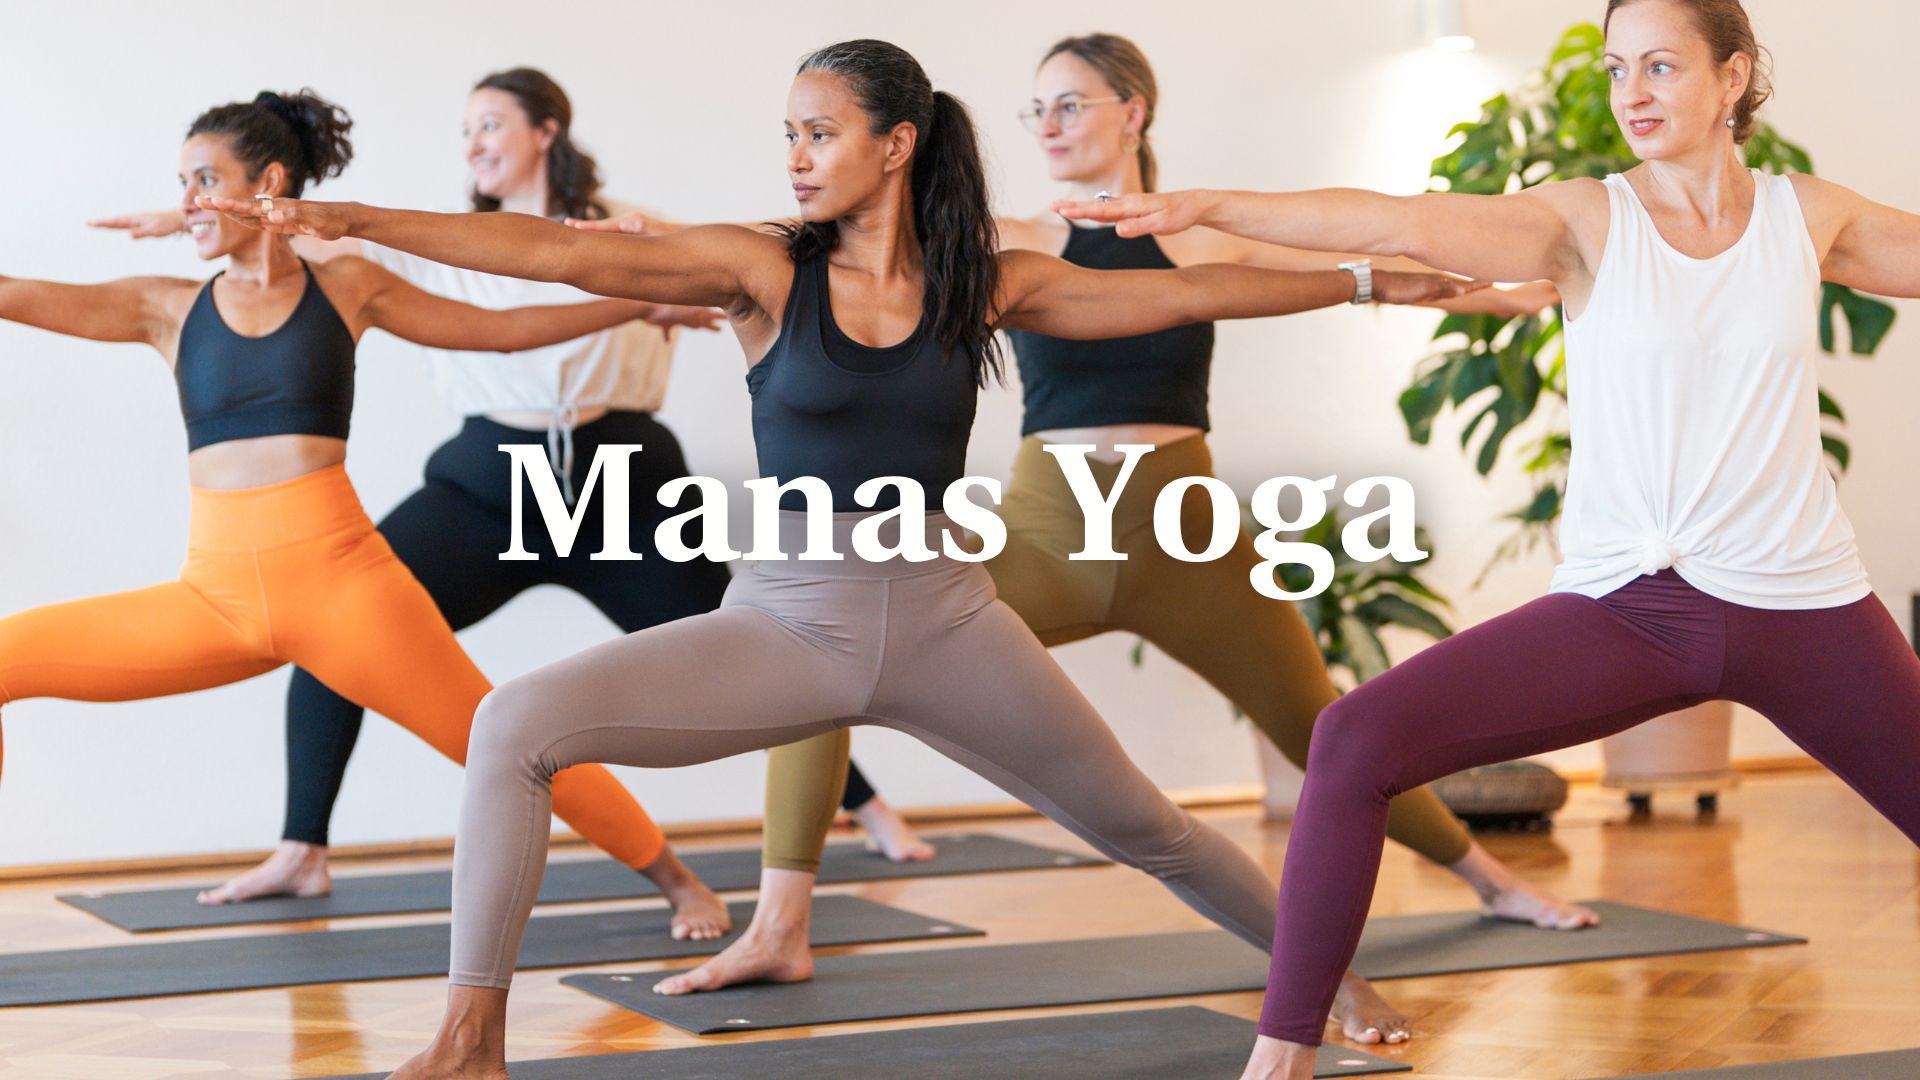 Komm mit uns zu Manas Yoga